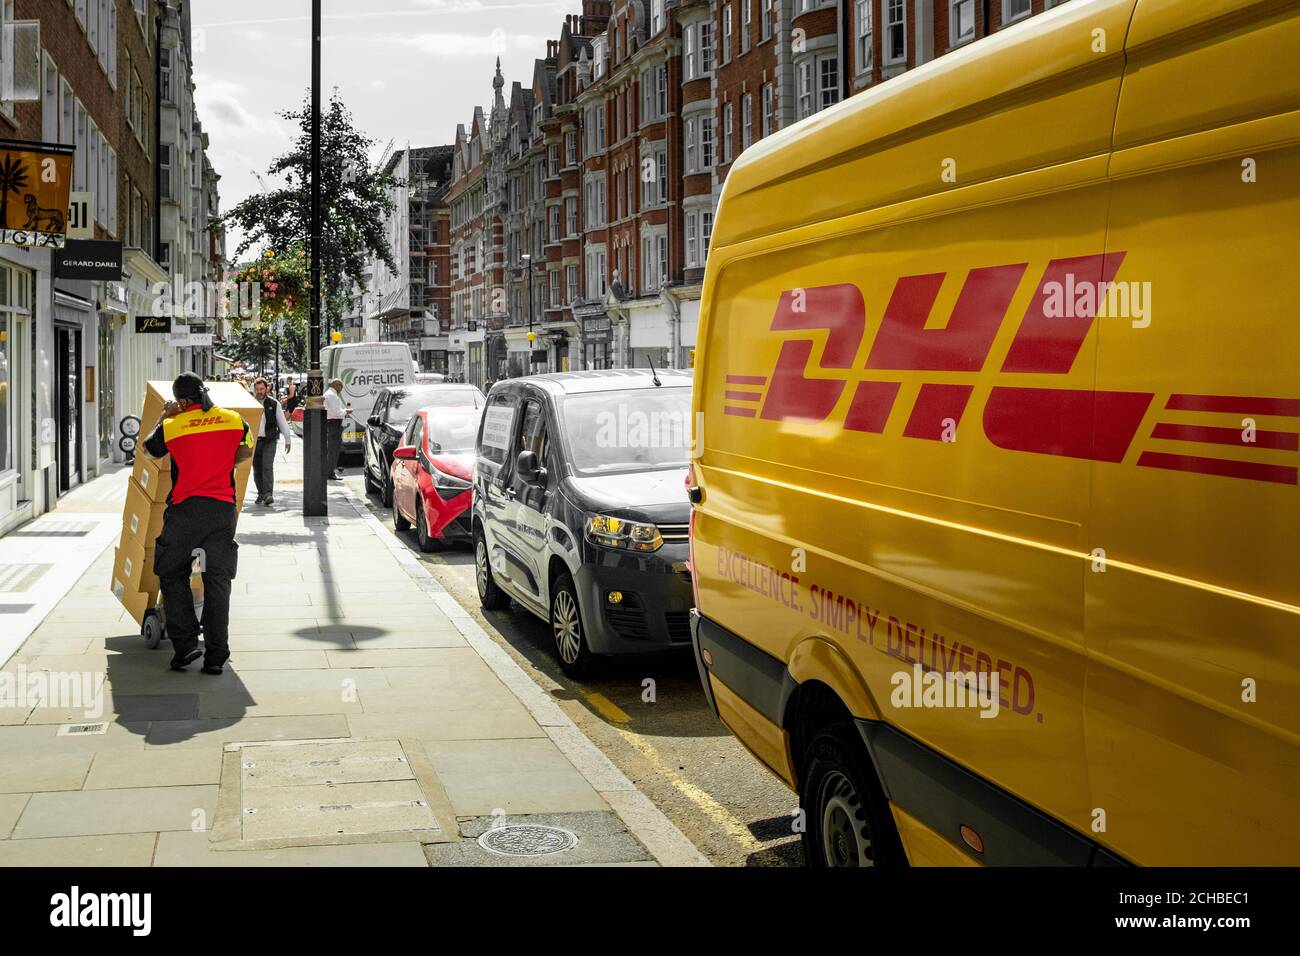 Londres - septembre 2020 : personne de livraison DHL et un minibus DHL sur la rue London Banque D'Images